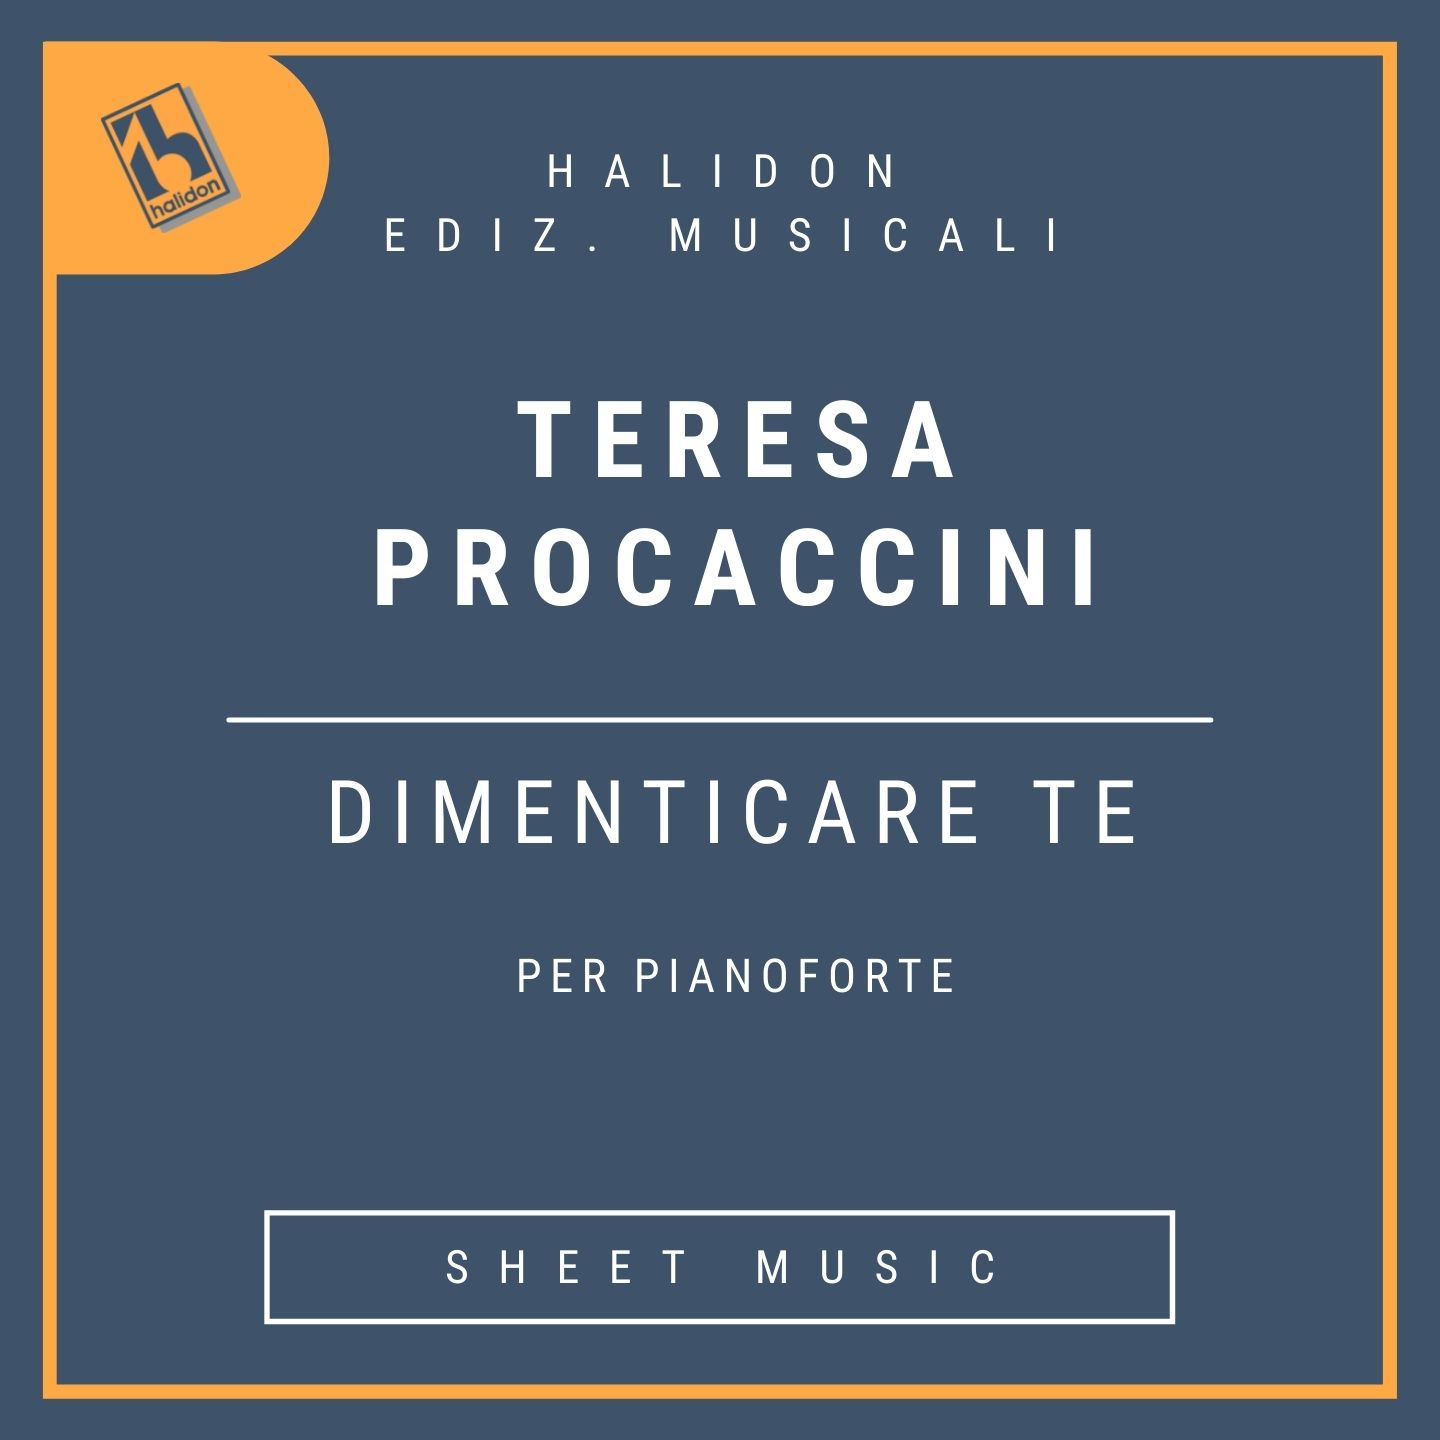 Teresa Procaccini - Dimenticare te